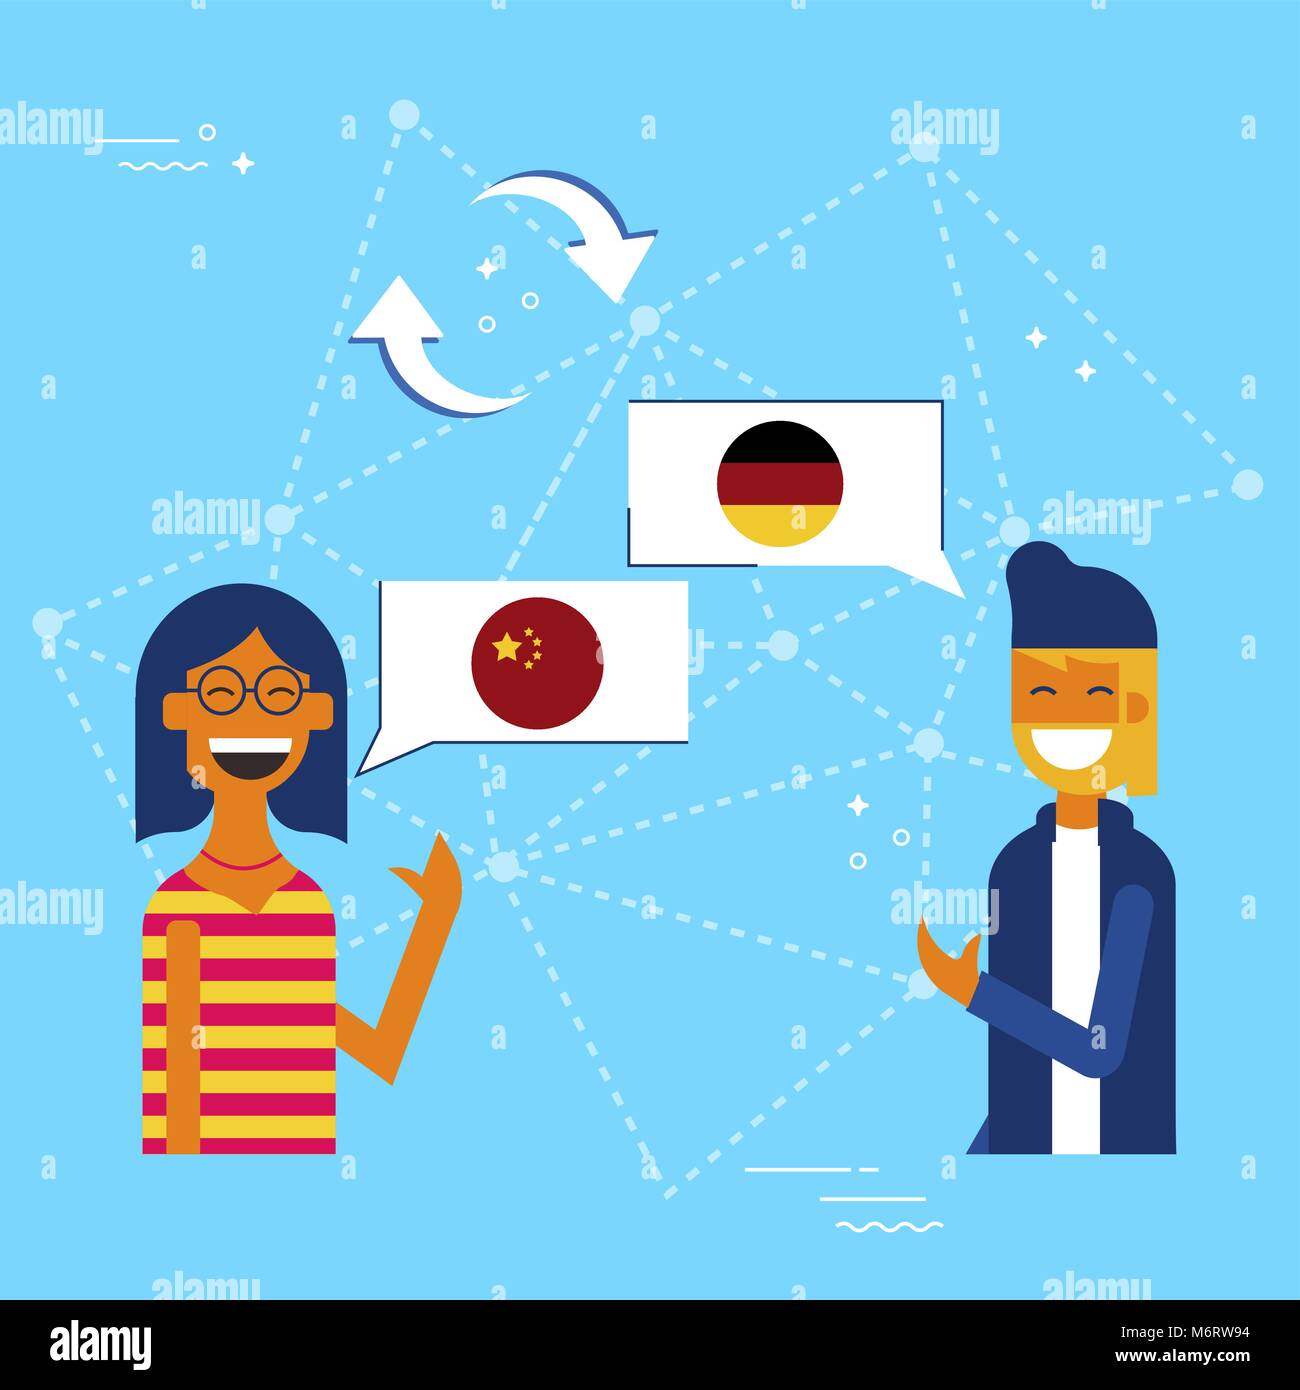 Kommunikation Übersetzung Konzeption Illustration, modernen Stil. Junge und Mädchen in on-line-Gespräch in der chinesischen Sprache auf Deutsch. EPS 10 ve Stock Vektor